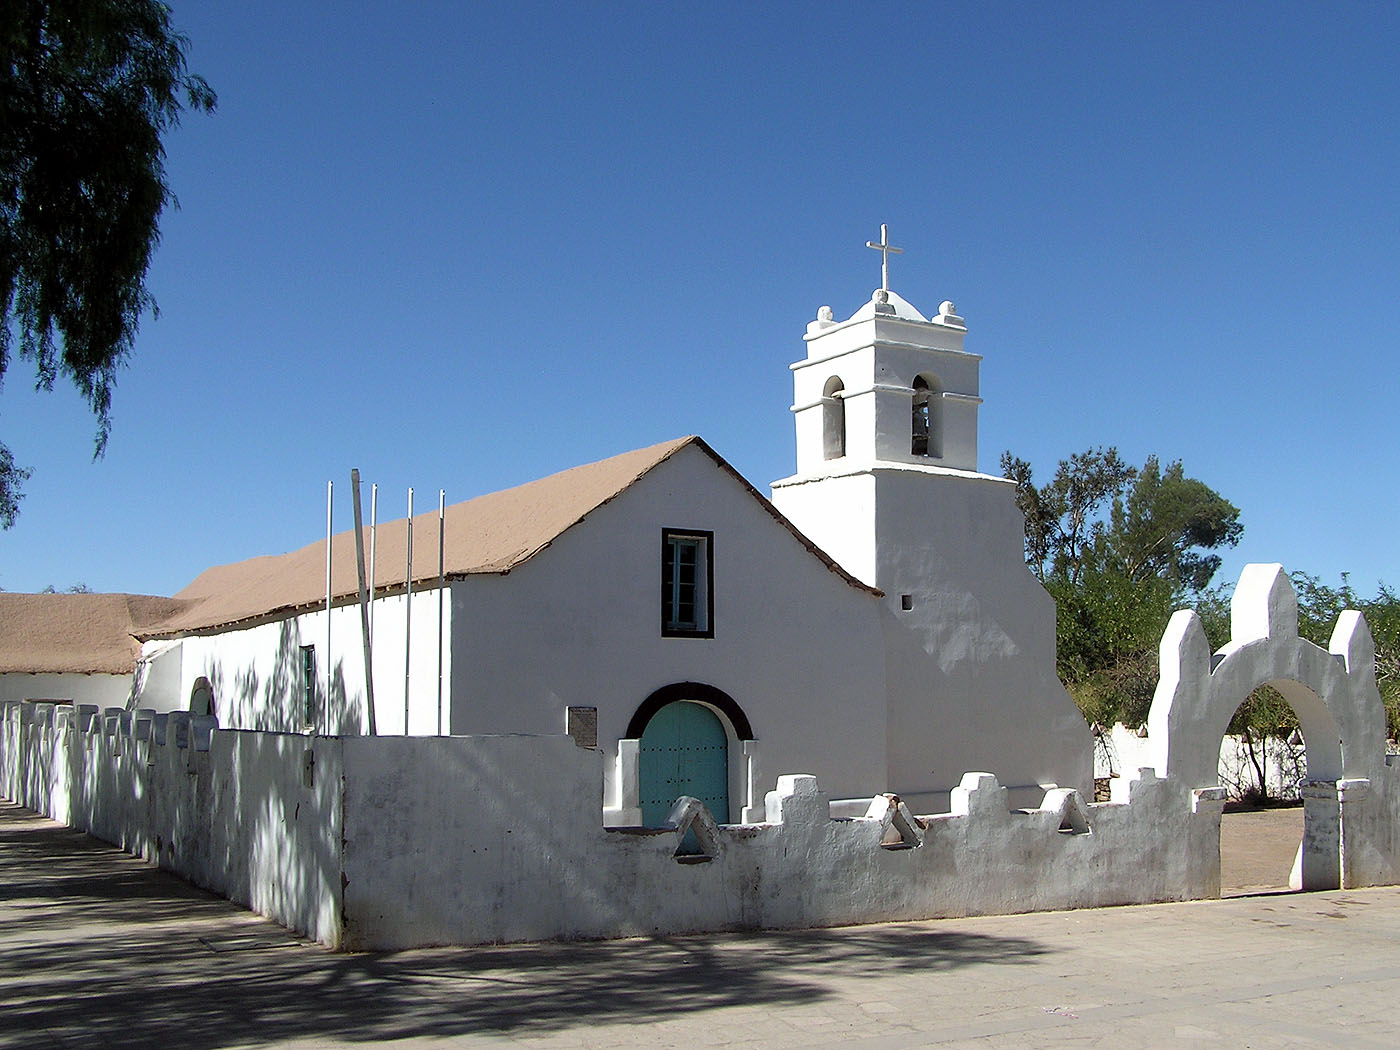 Church, San Pedro de Atacama, Chile